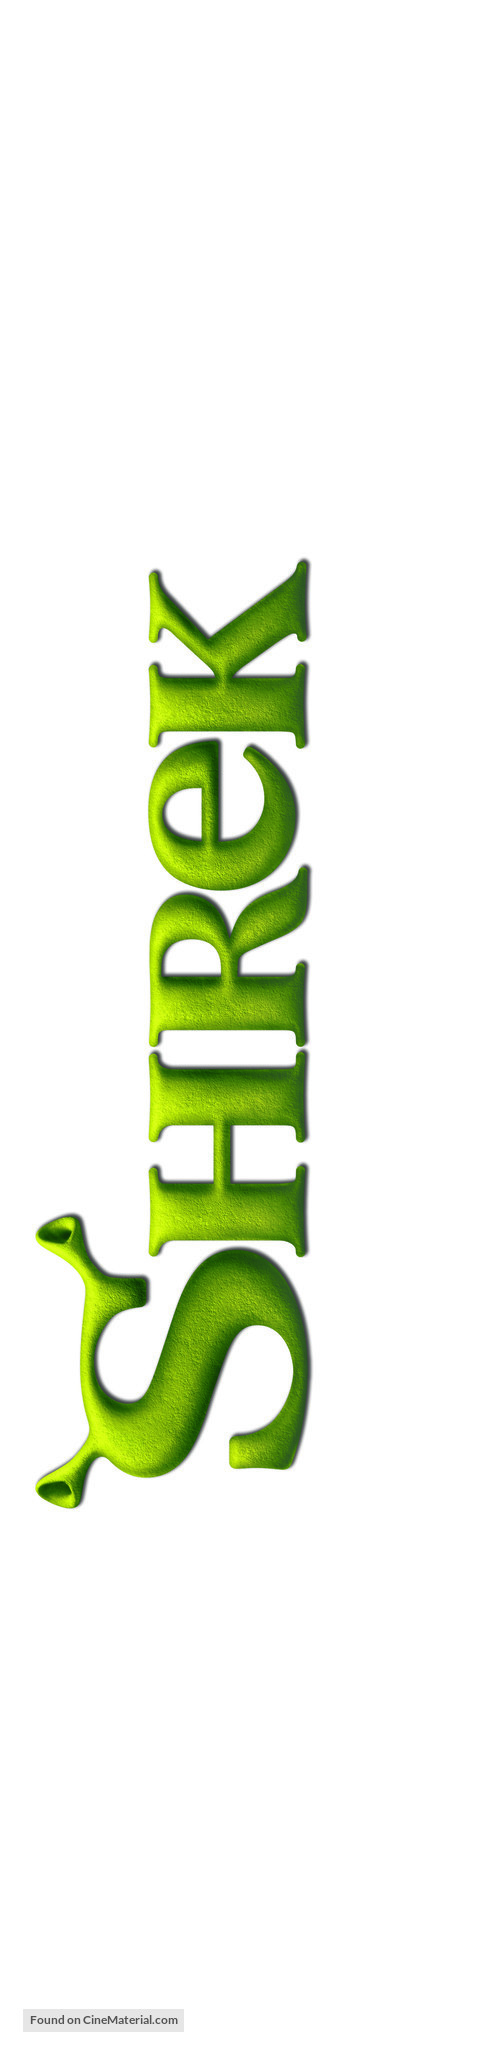 Shrek Forever After - Czech Logo